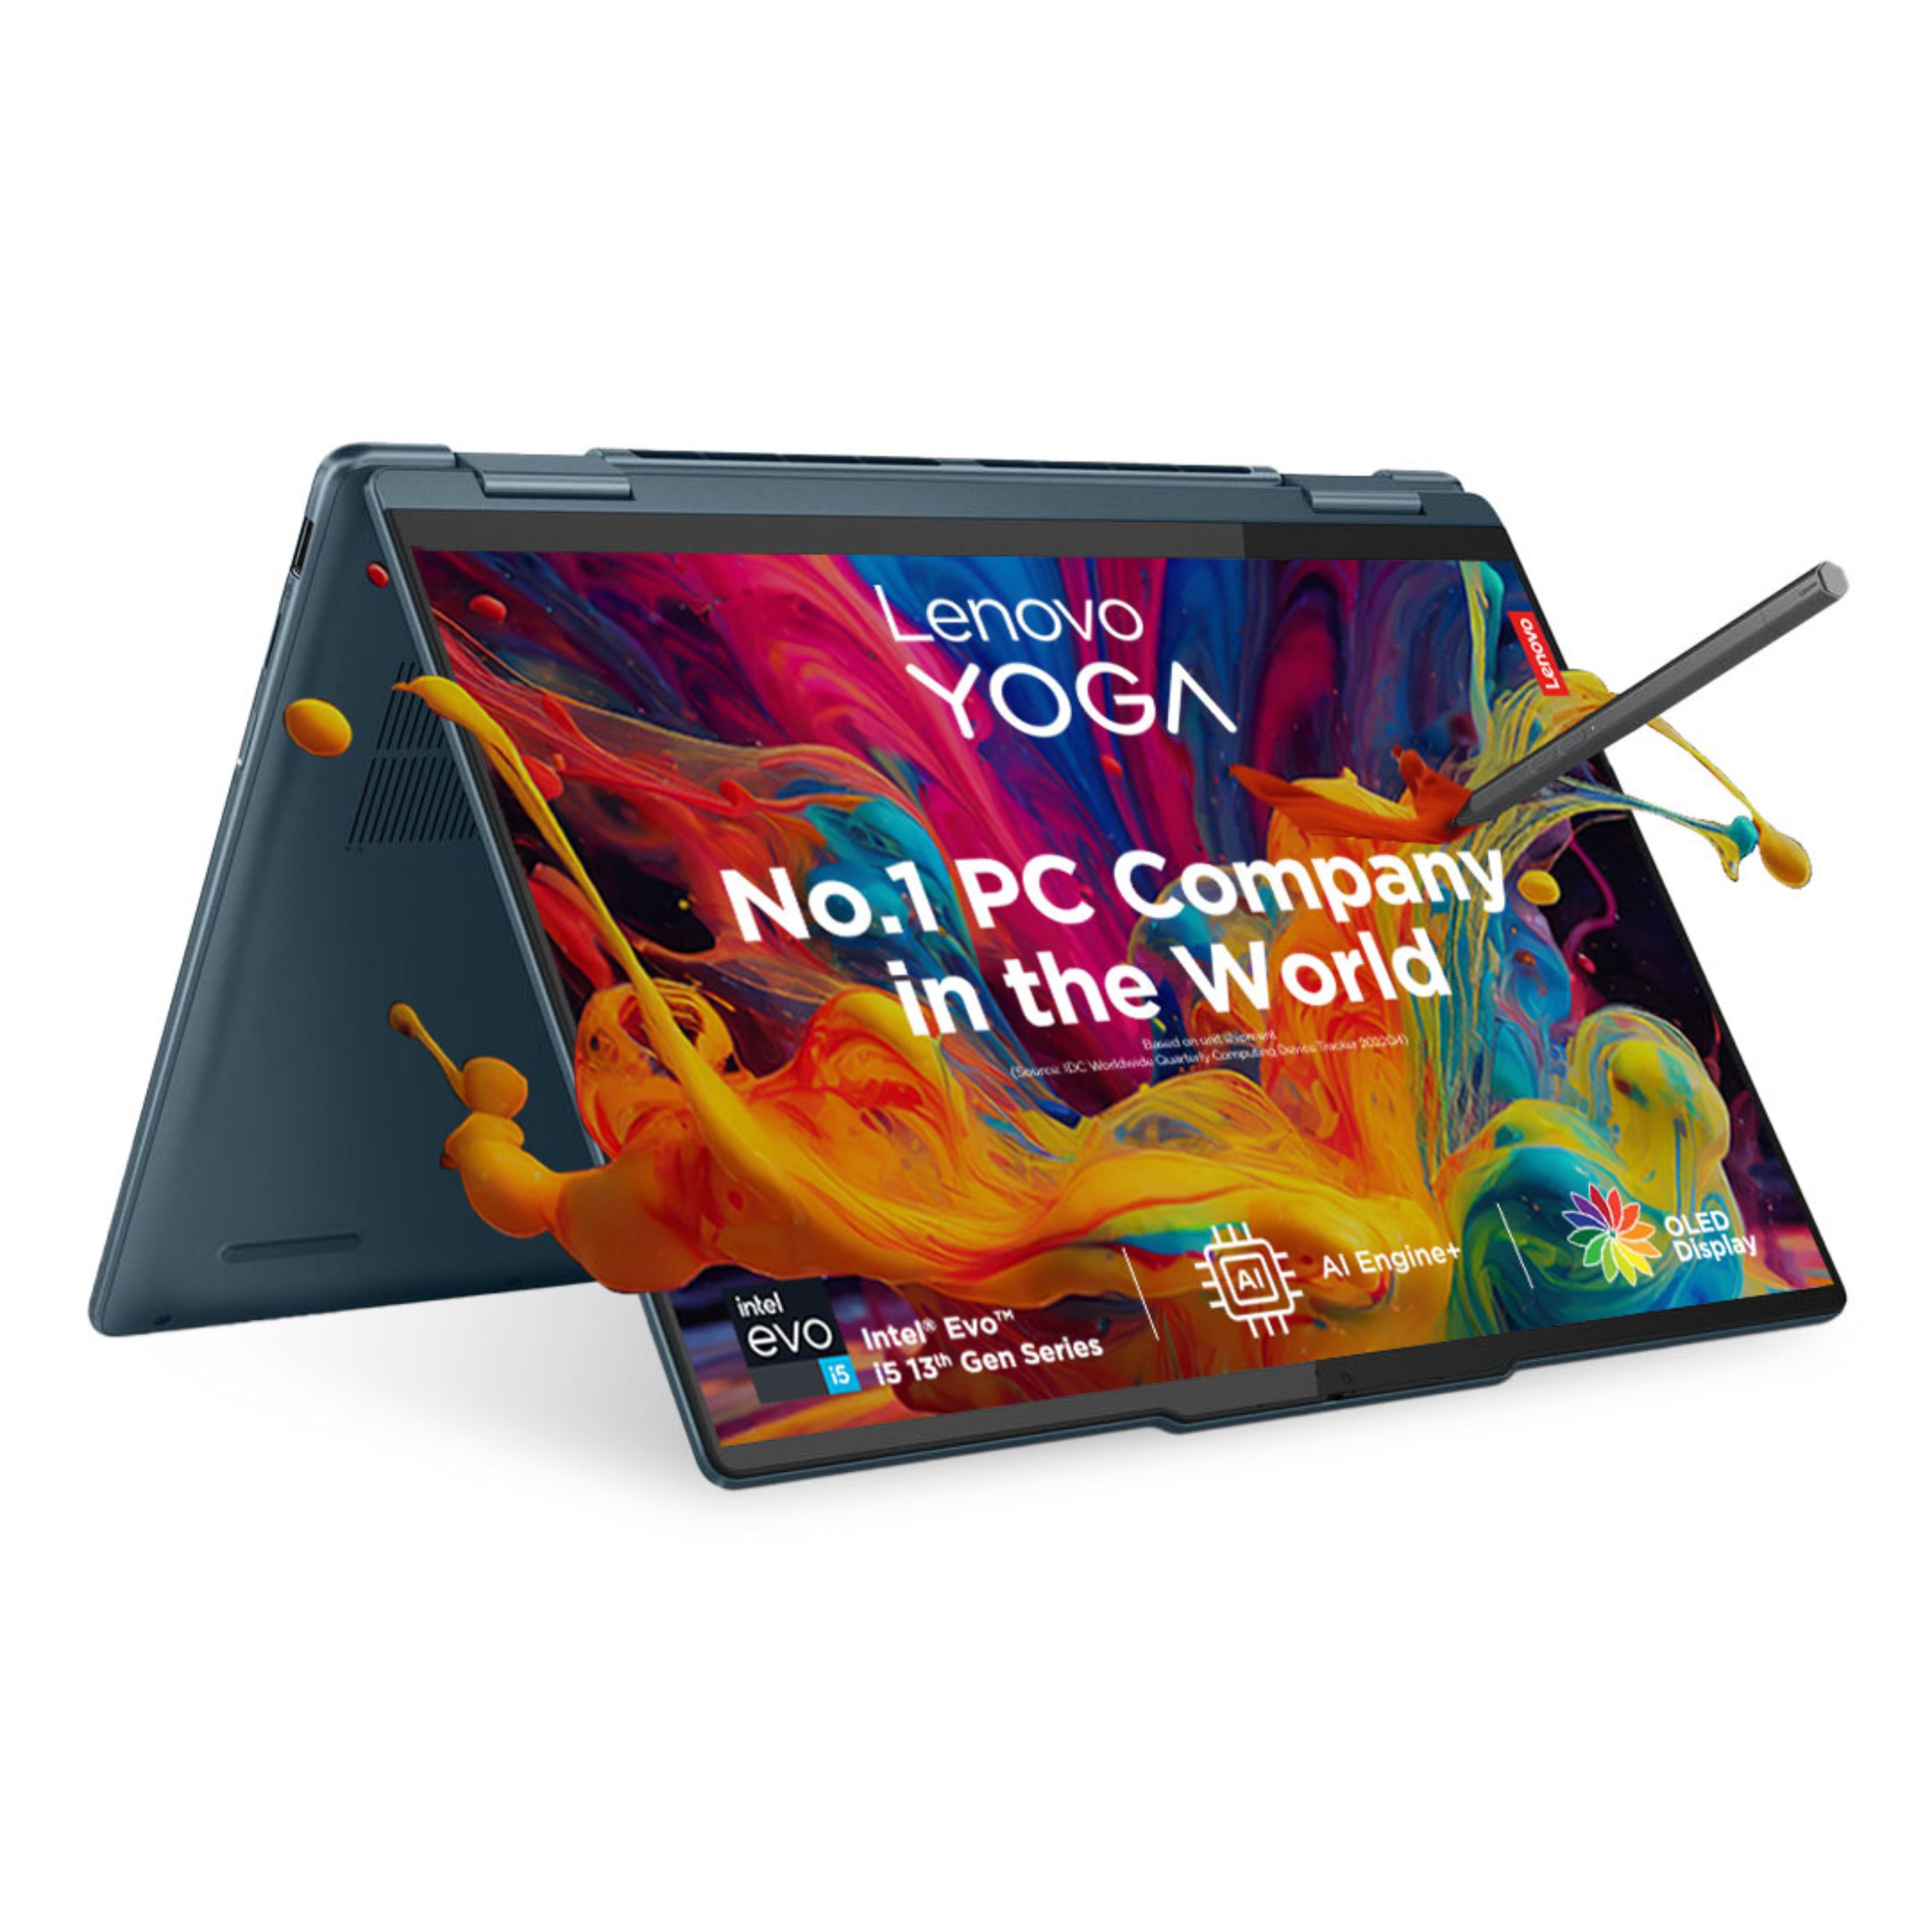 Yoga 7i 13th Gen, 35.56cms - Intel i5 (Storm Grey)